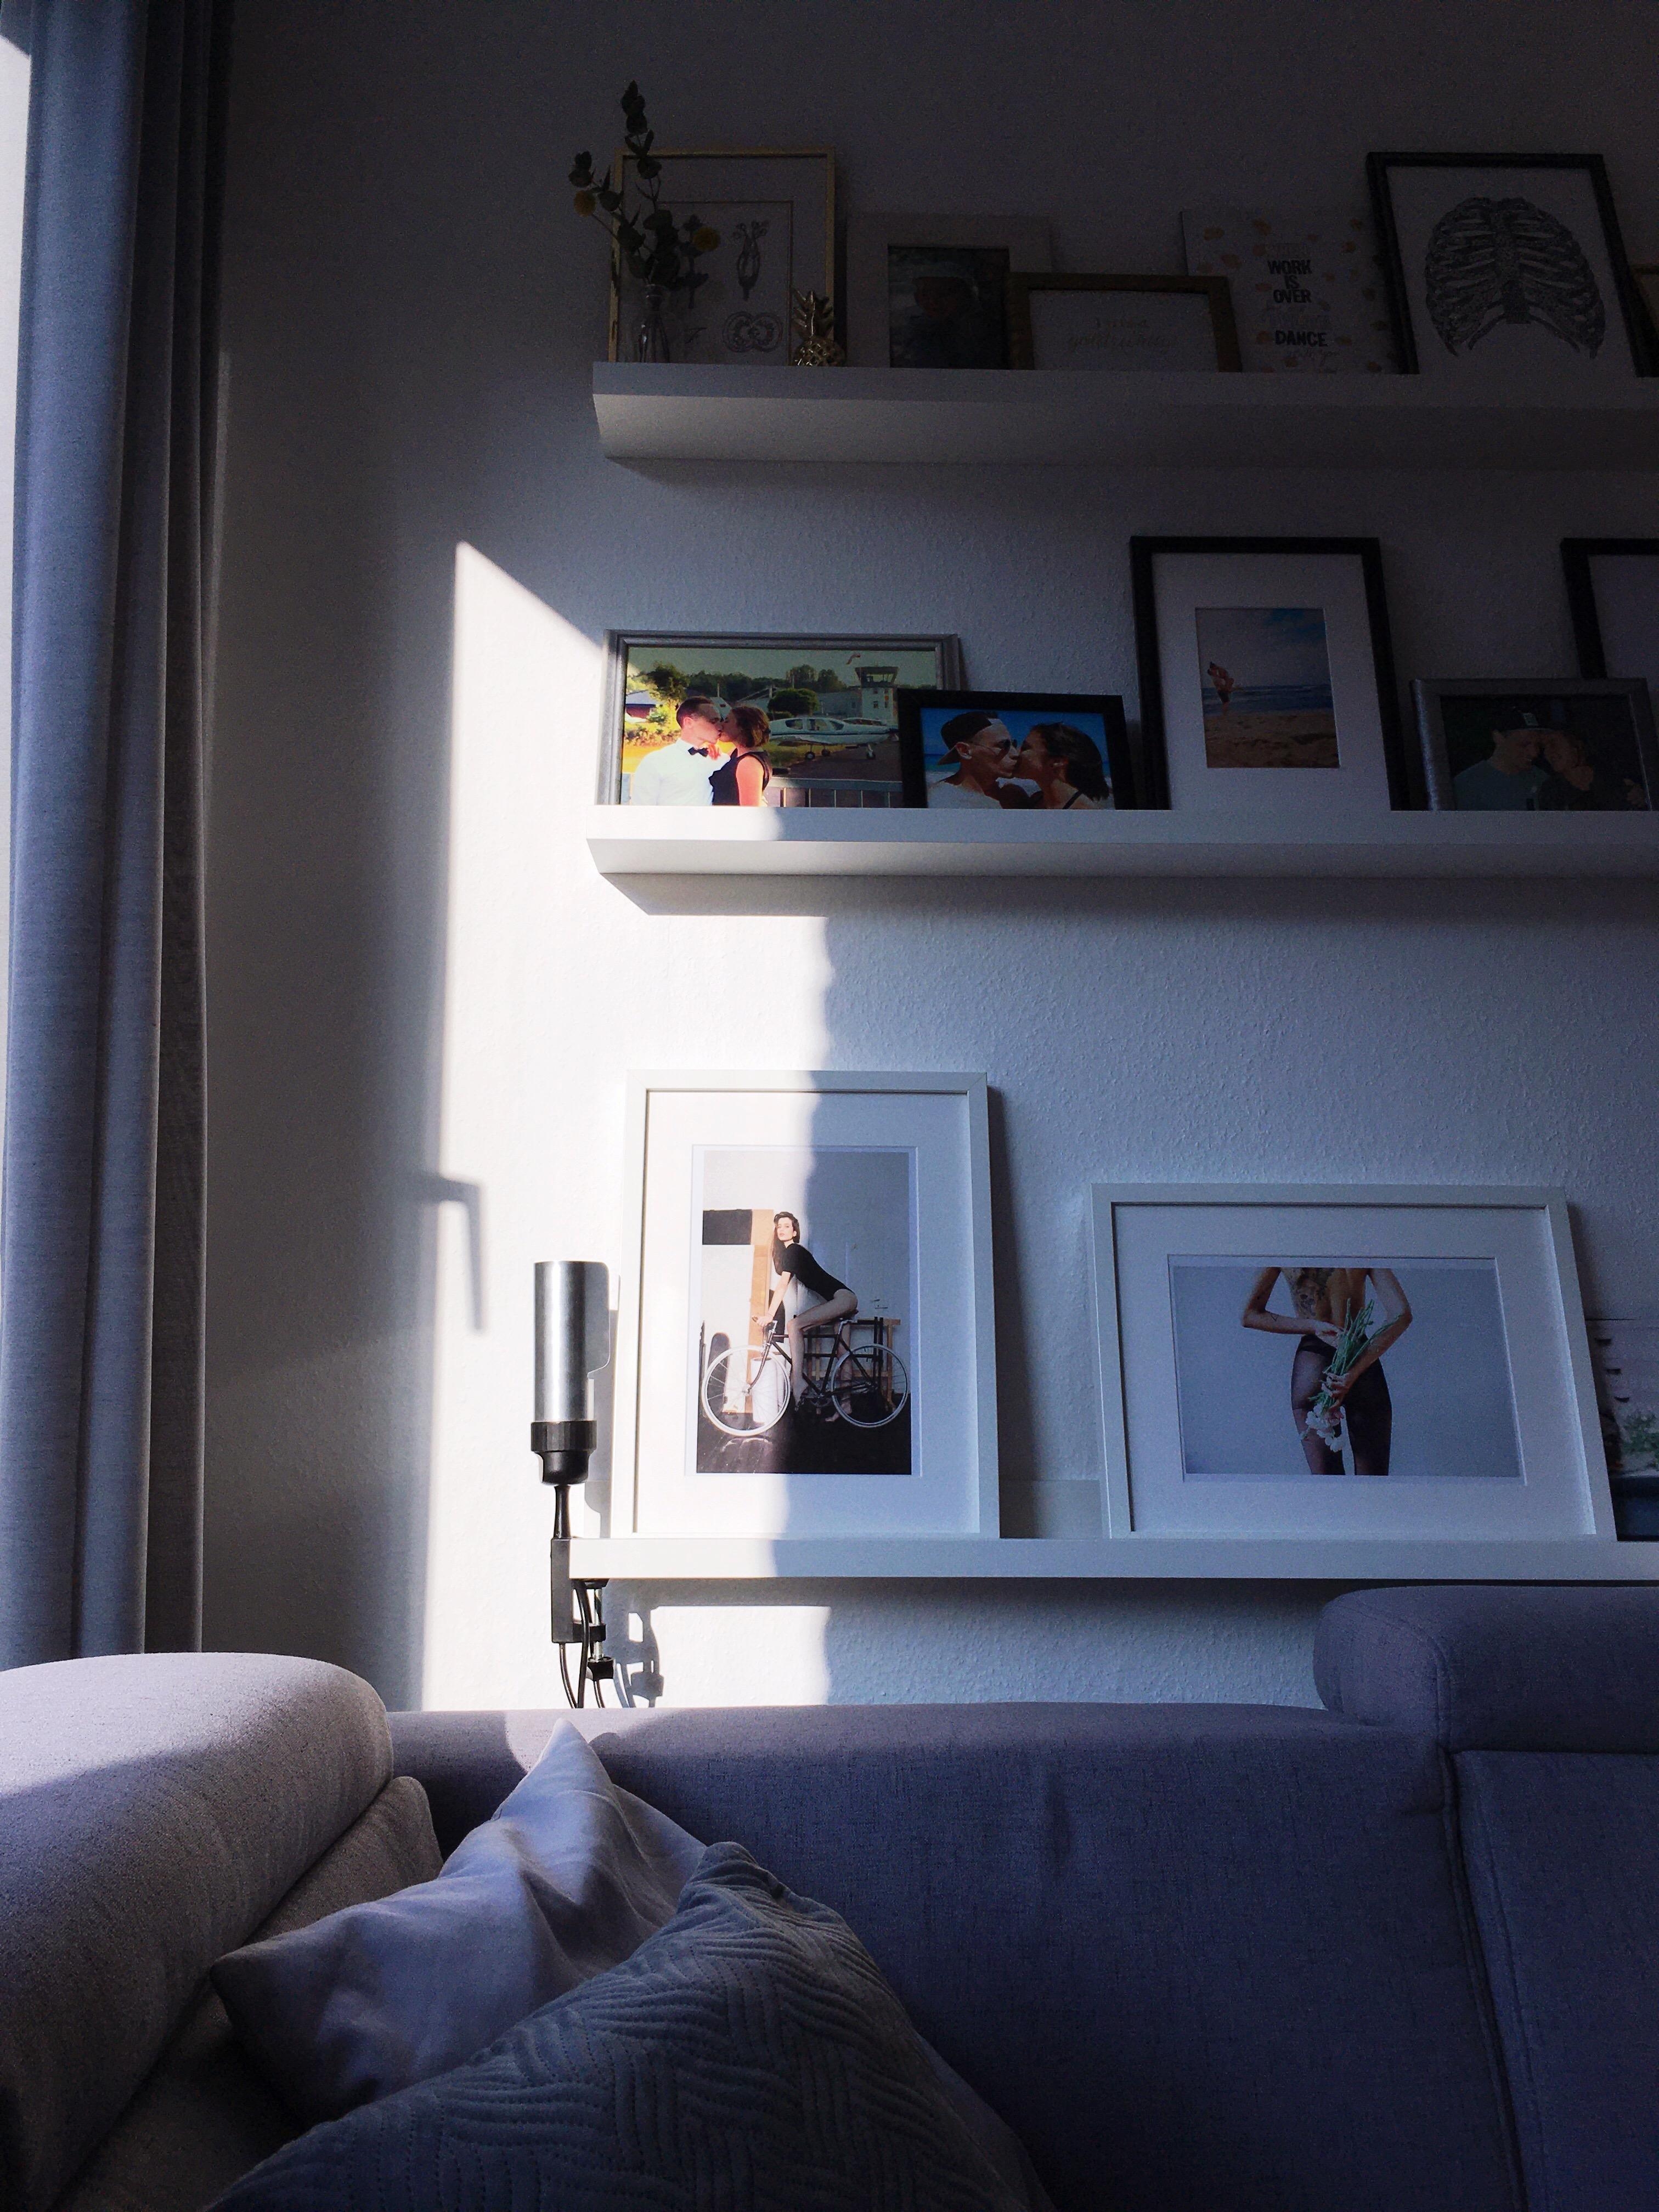 wintersonne im wohnzimmer 
#wintersonne #livingroom #schattenspiel #ausgraumachhell #ikea